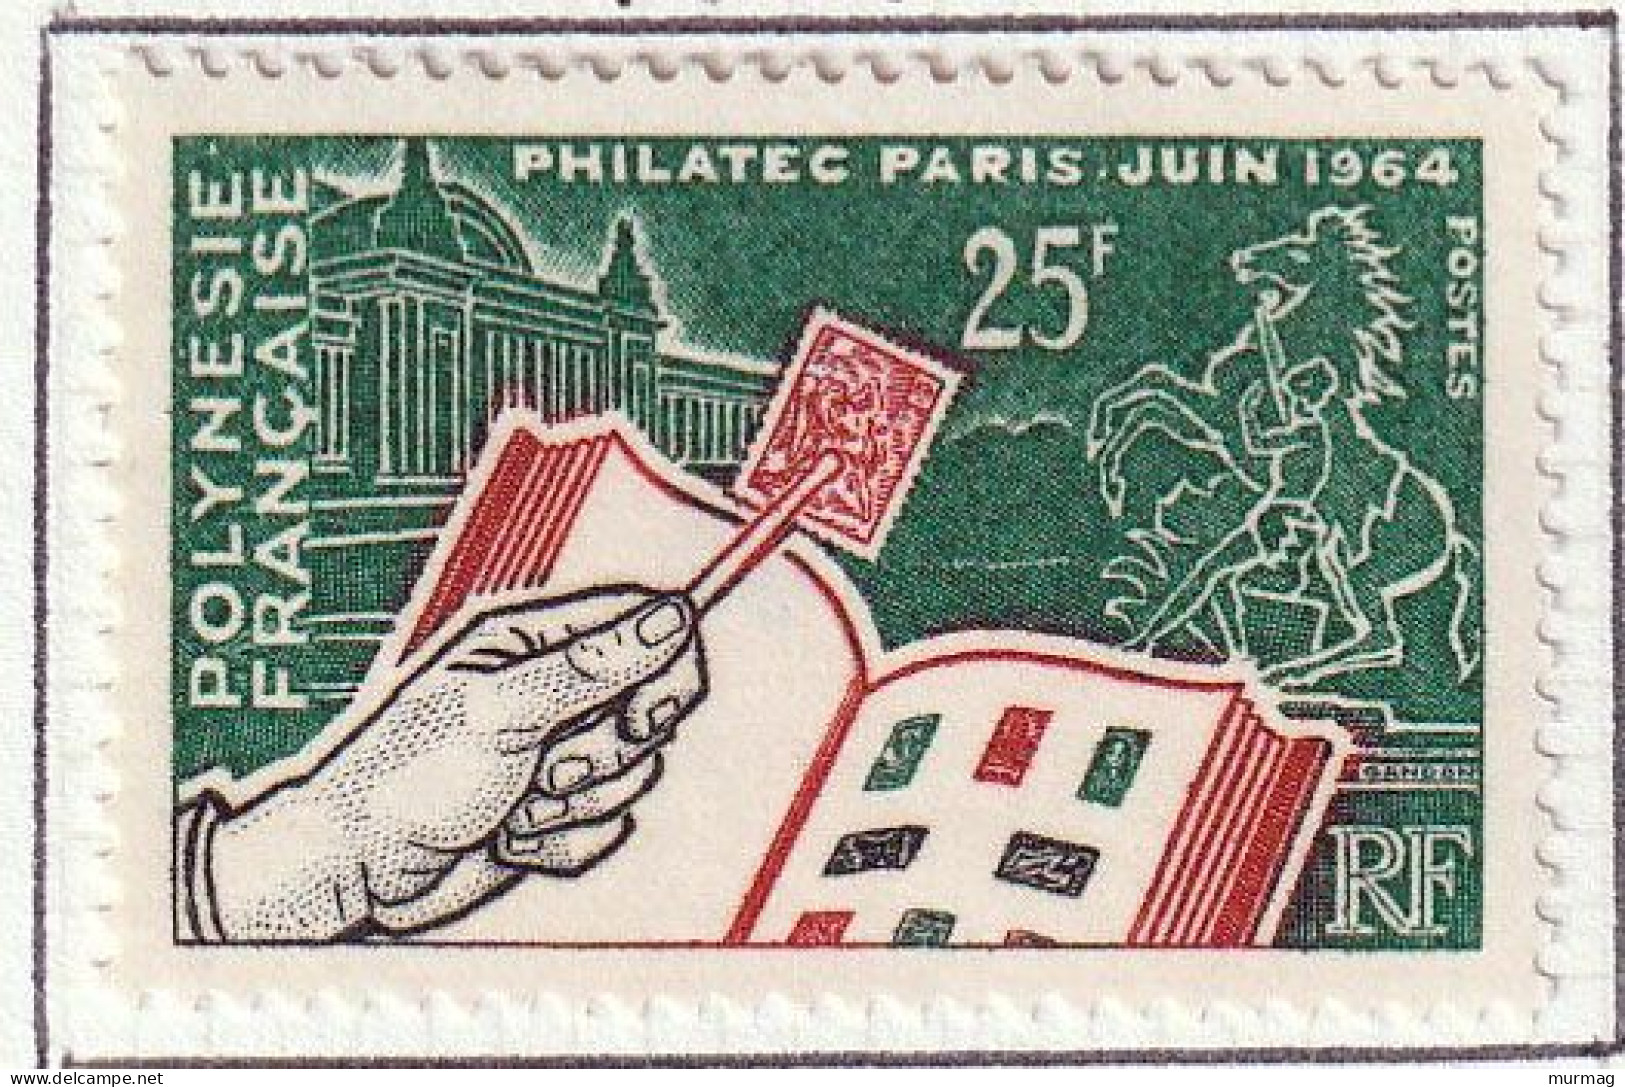 POLYNESIE FRANCAISE - Expo. Philat. à Paris "Philatec" - Y&T N° 26 - 1964 - MH - Neufs